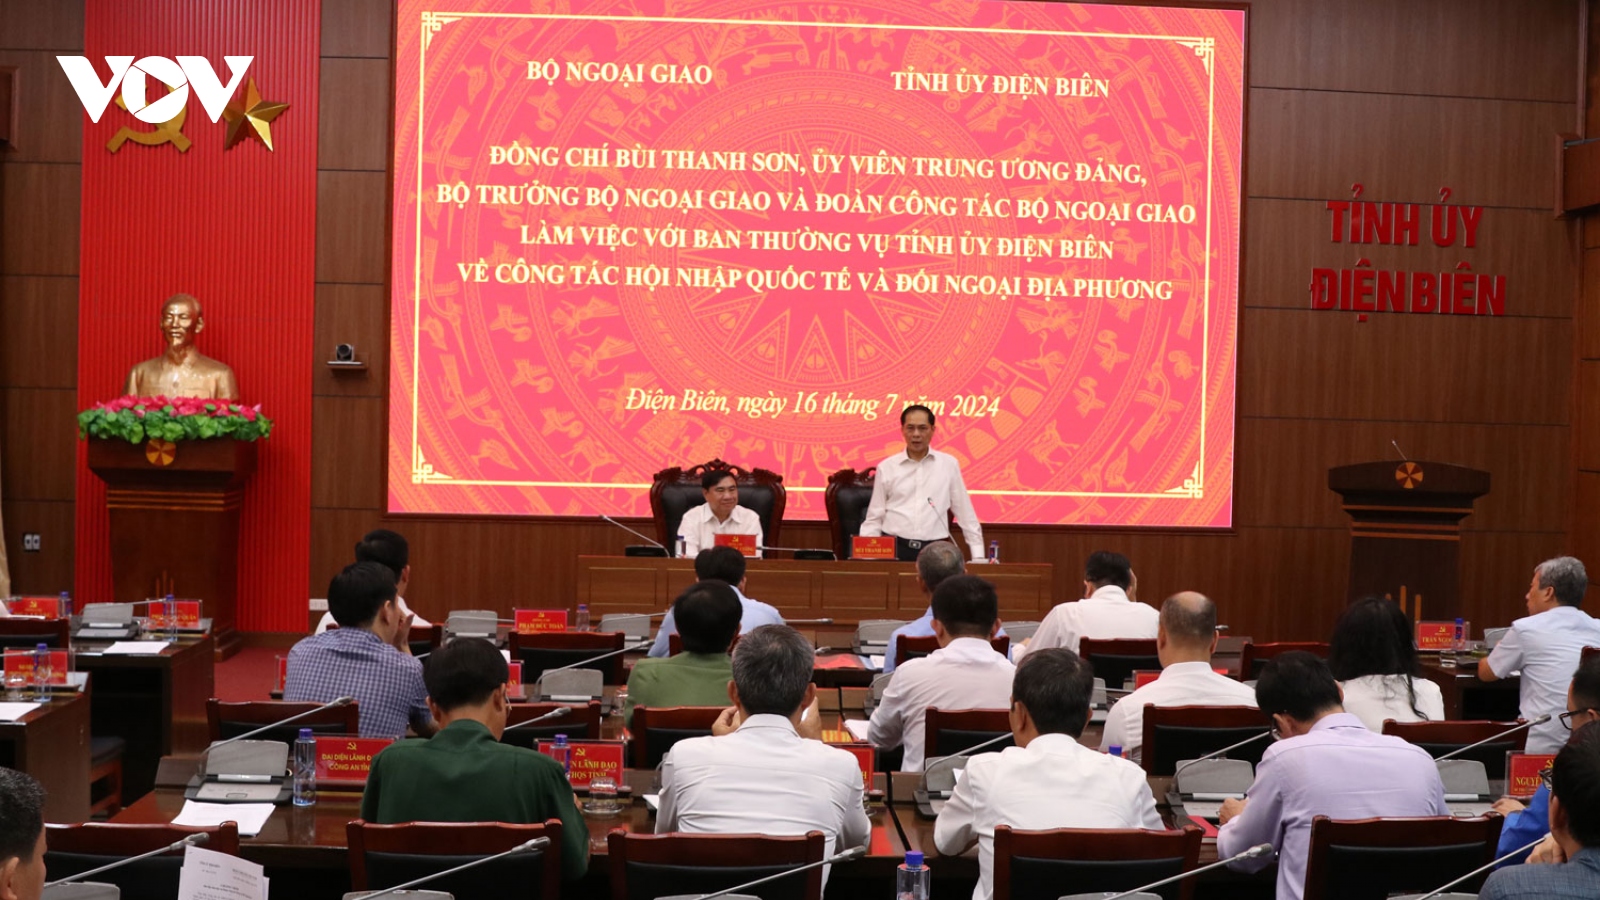 Bộ trưởng Bộ Ngoại giao Bùi Thanh Sơn làm việc với tỉnh Điện Biên